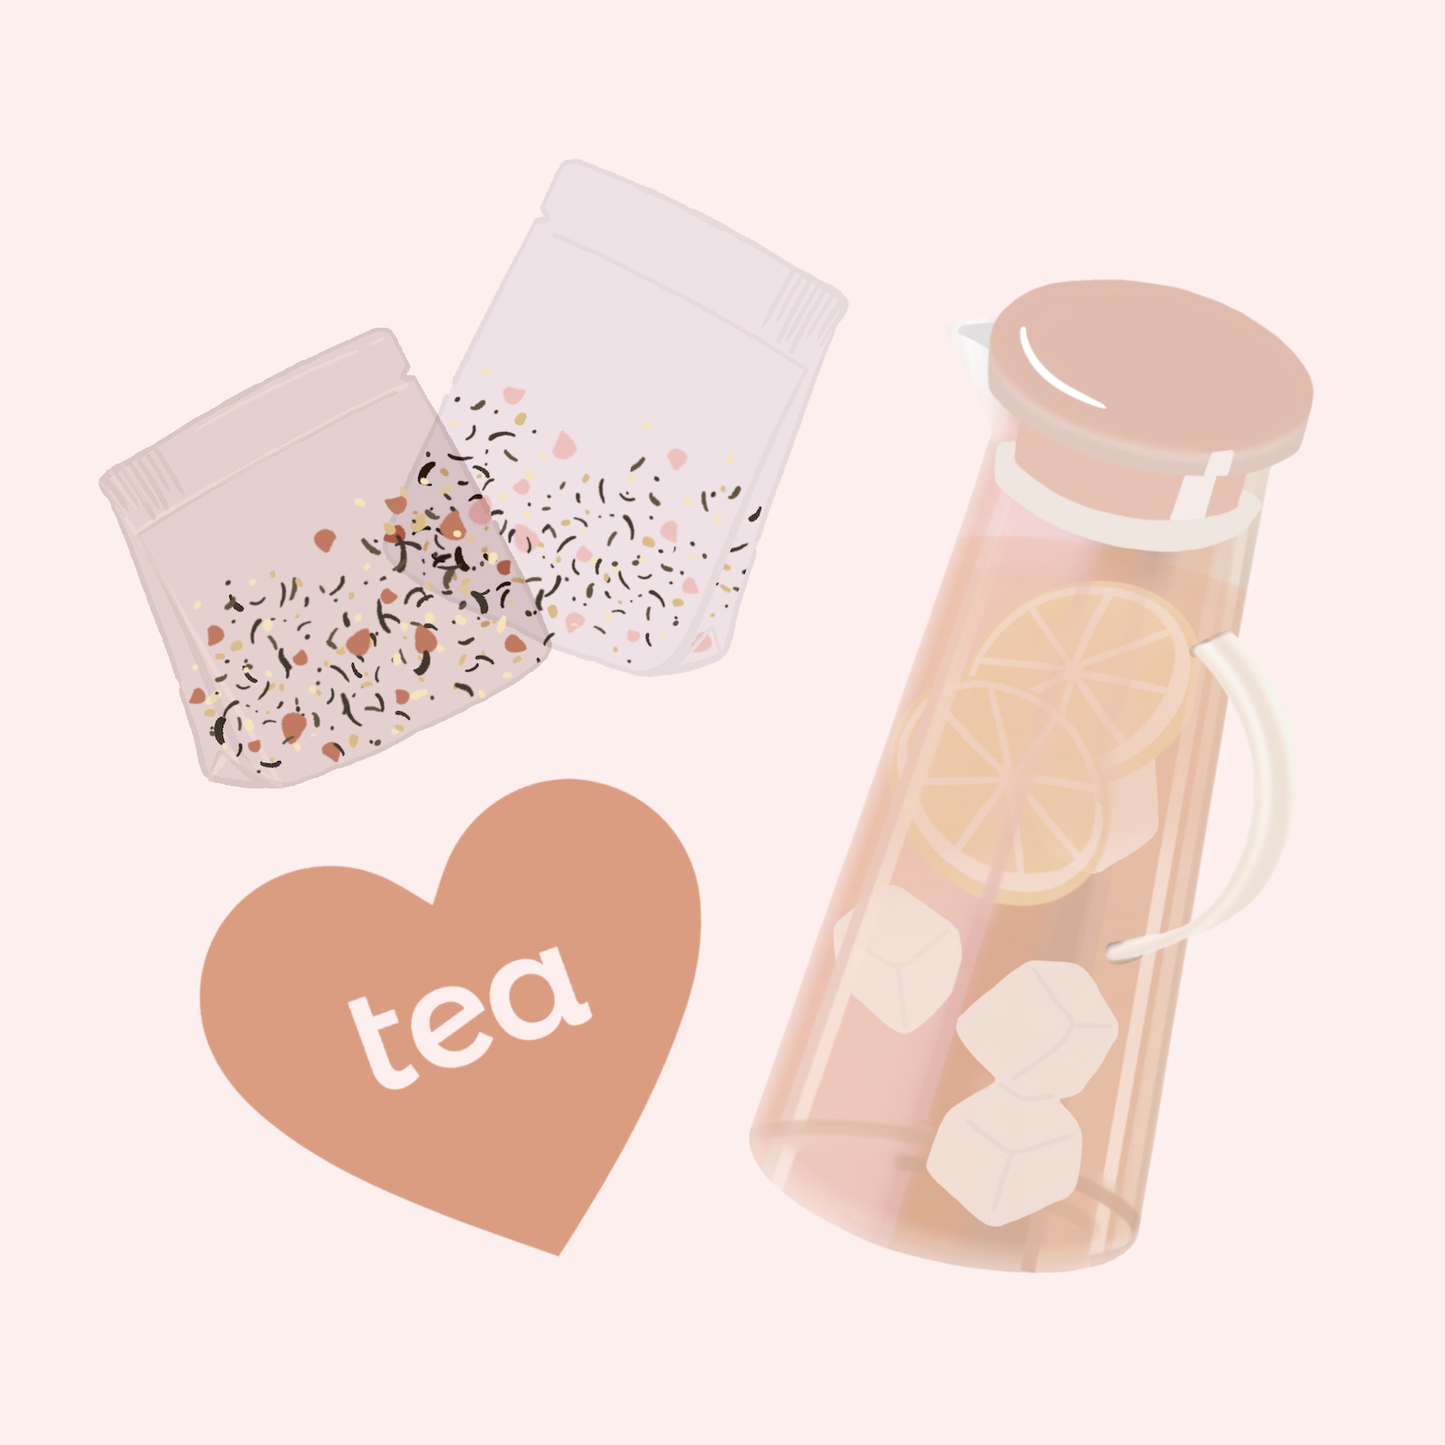 Iced Tea Kit